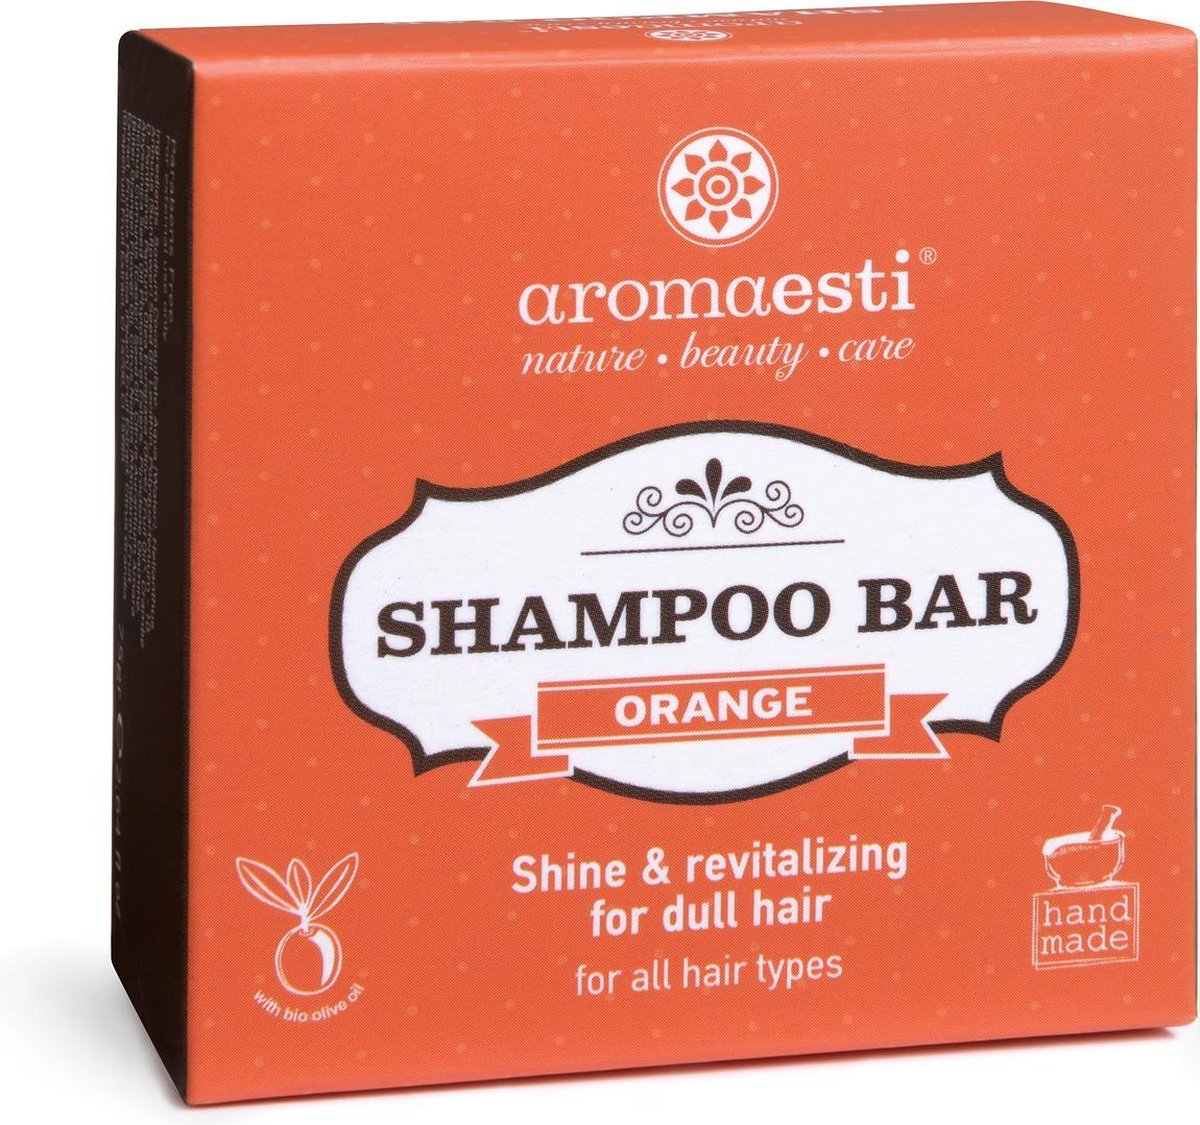 Aromaesti Shampoo Bar Orange - sinaasappel - shampoo bij futloos haar - solid shampoo - vegan - duurzaam - biologisch - diervriendelijk - zero waste - 60 gram